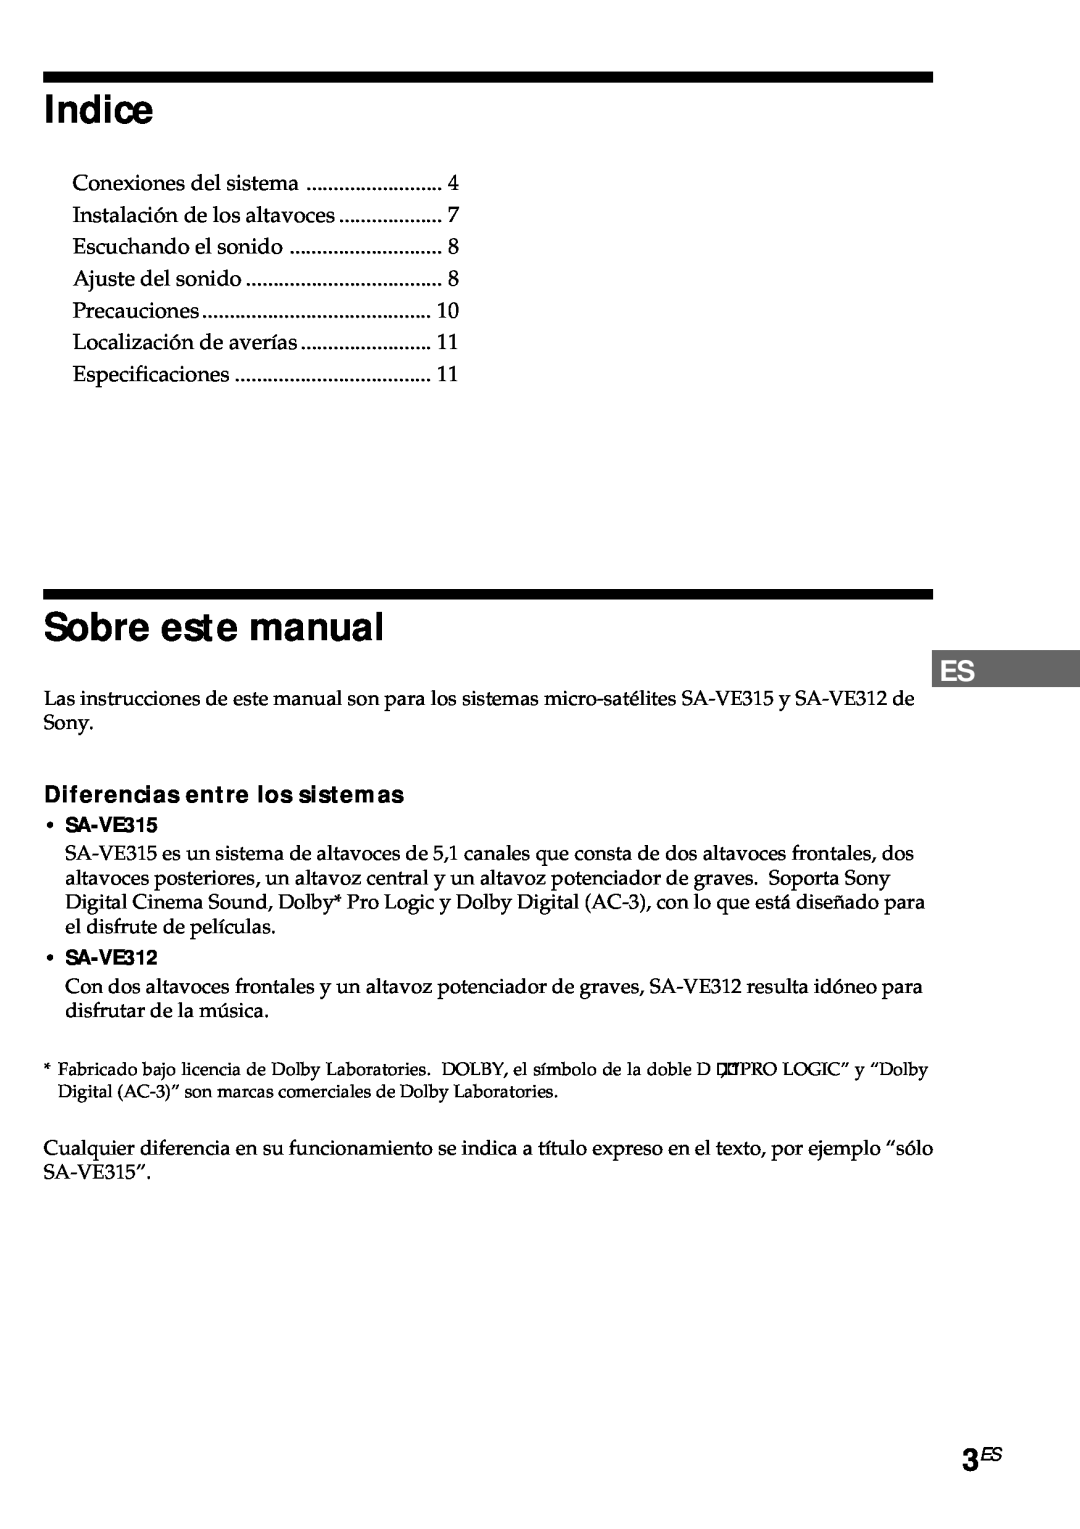 Sony SA-VE315 Indice, Sobre este manual, Diferencias entre los sistemas, SA-VE312 